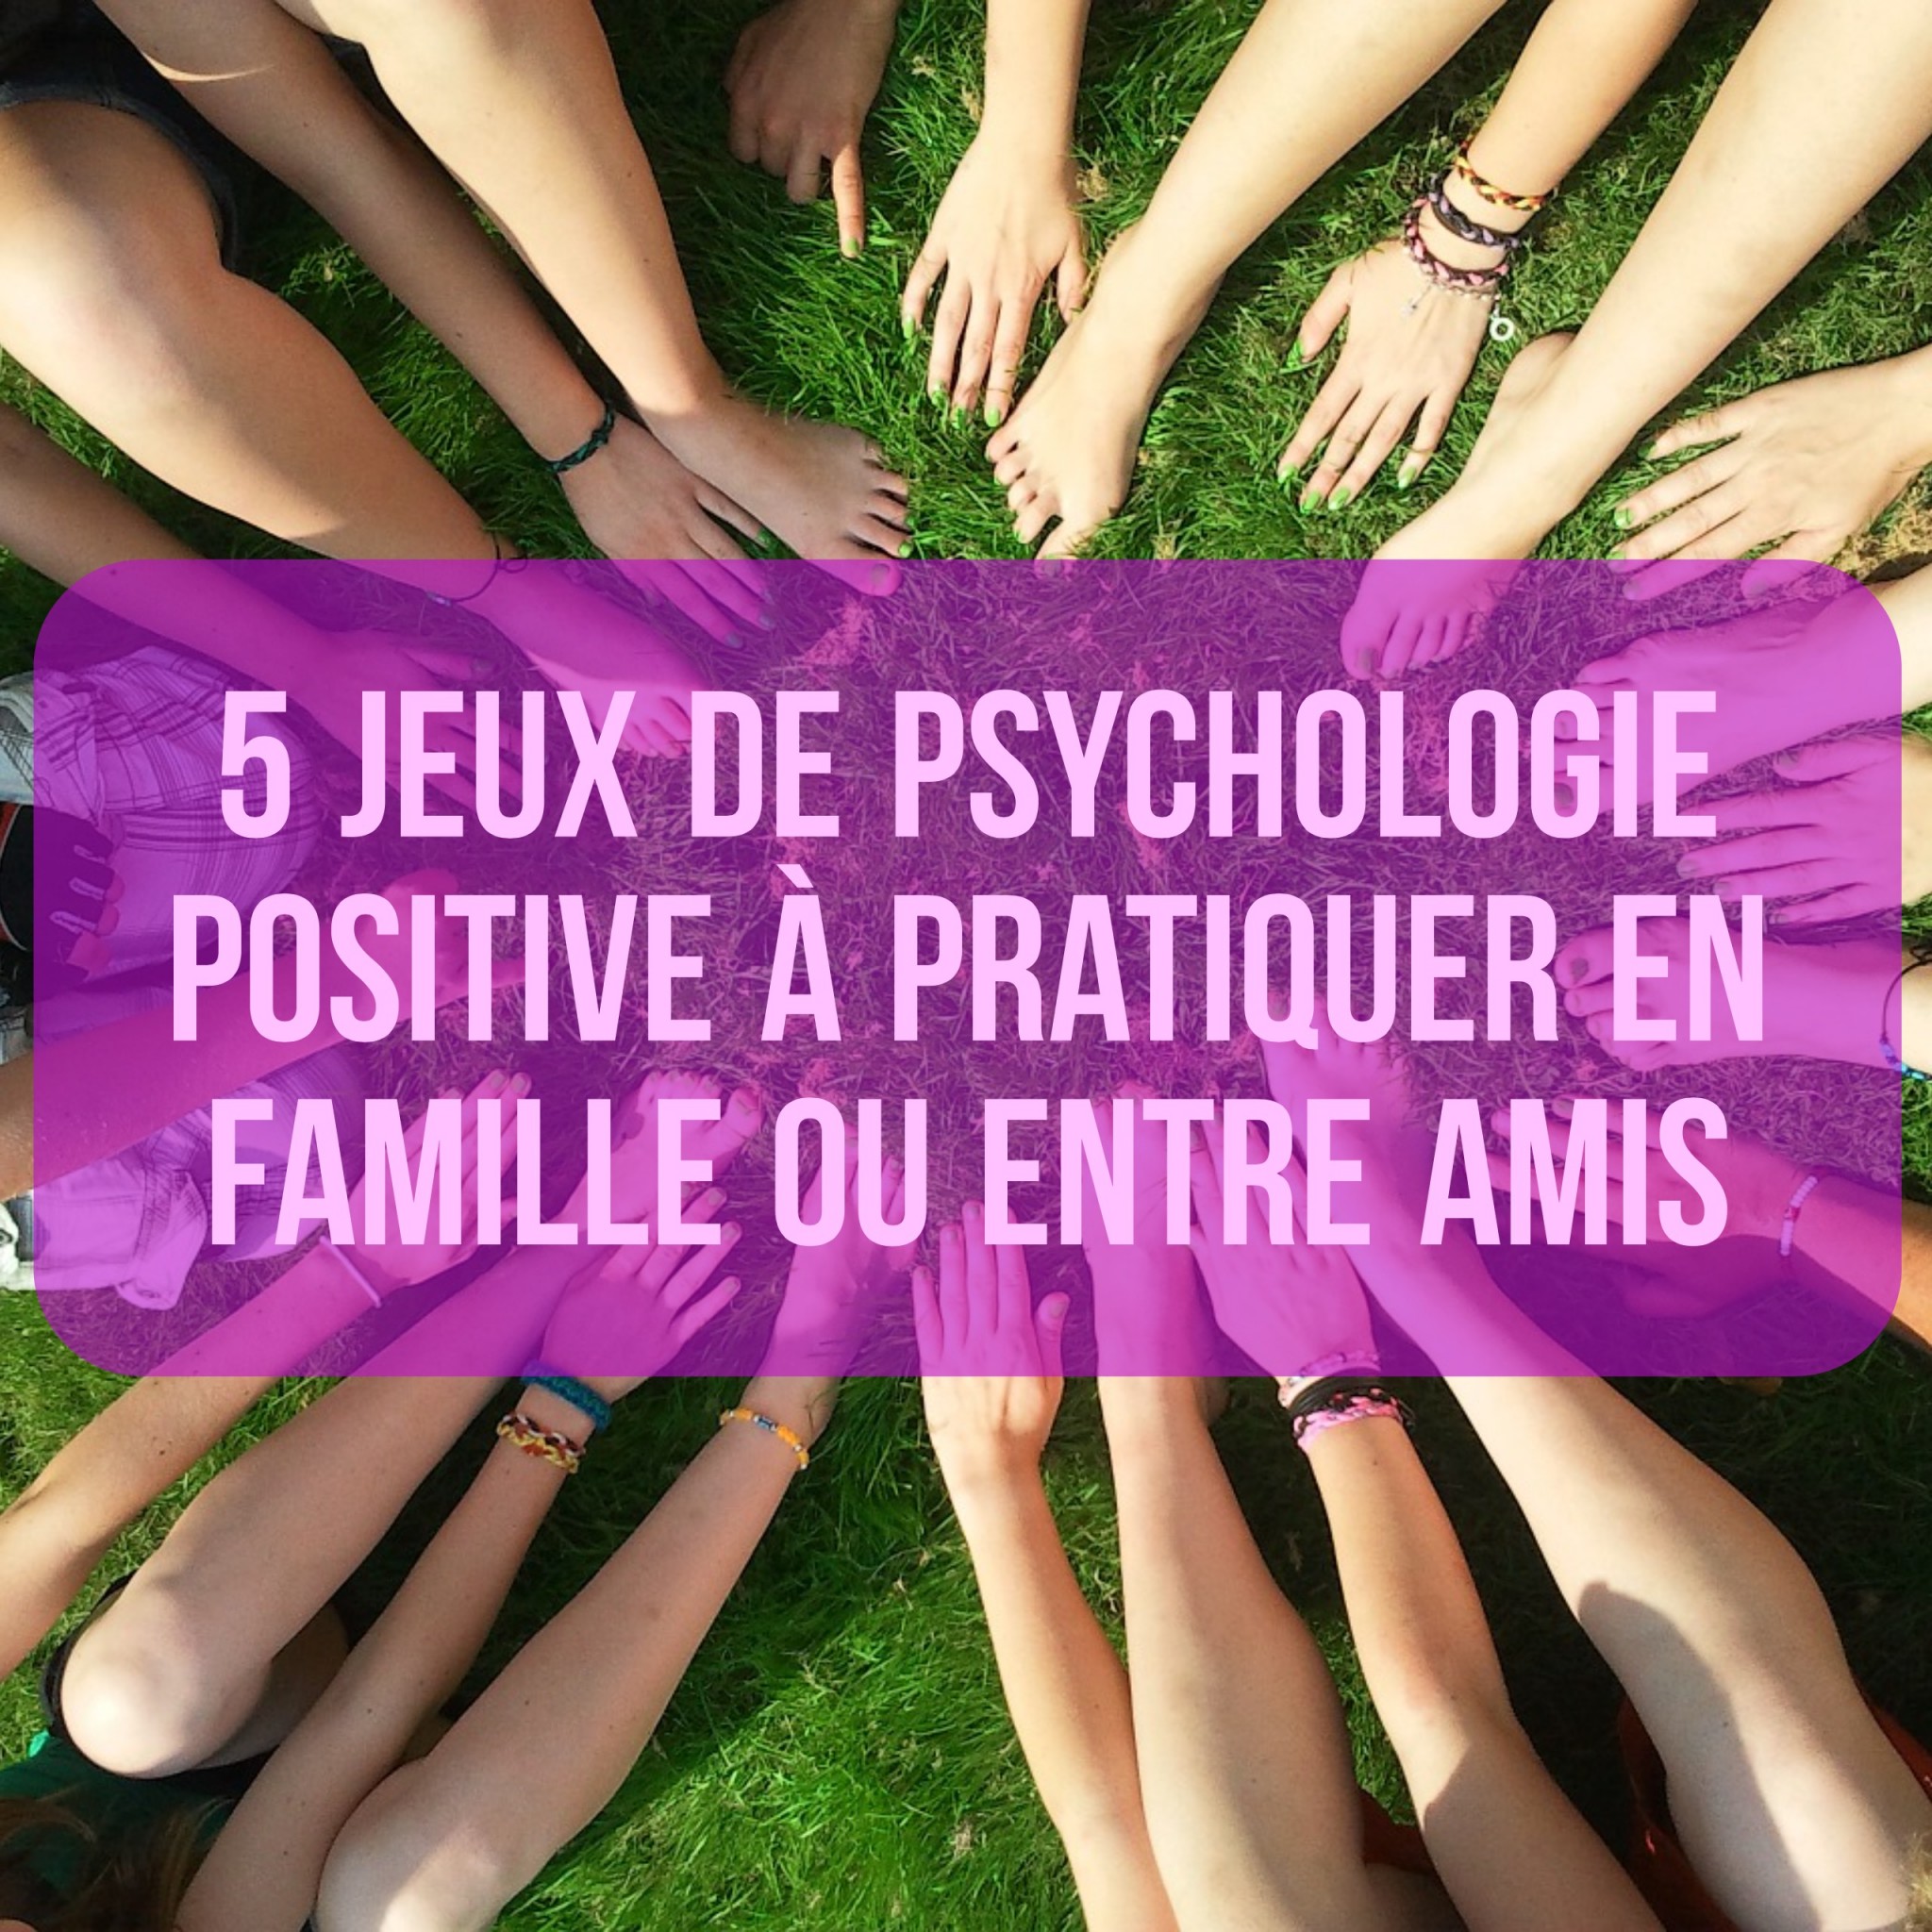 https://papapositive.fr/wp-content/uploads/2016/07/5-jeux-de-psychologie-positive-%C3%A0-pratiquer-en-famille.jpg